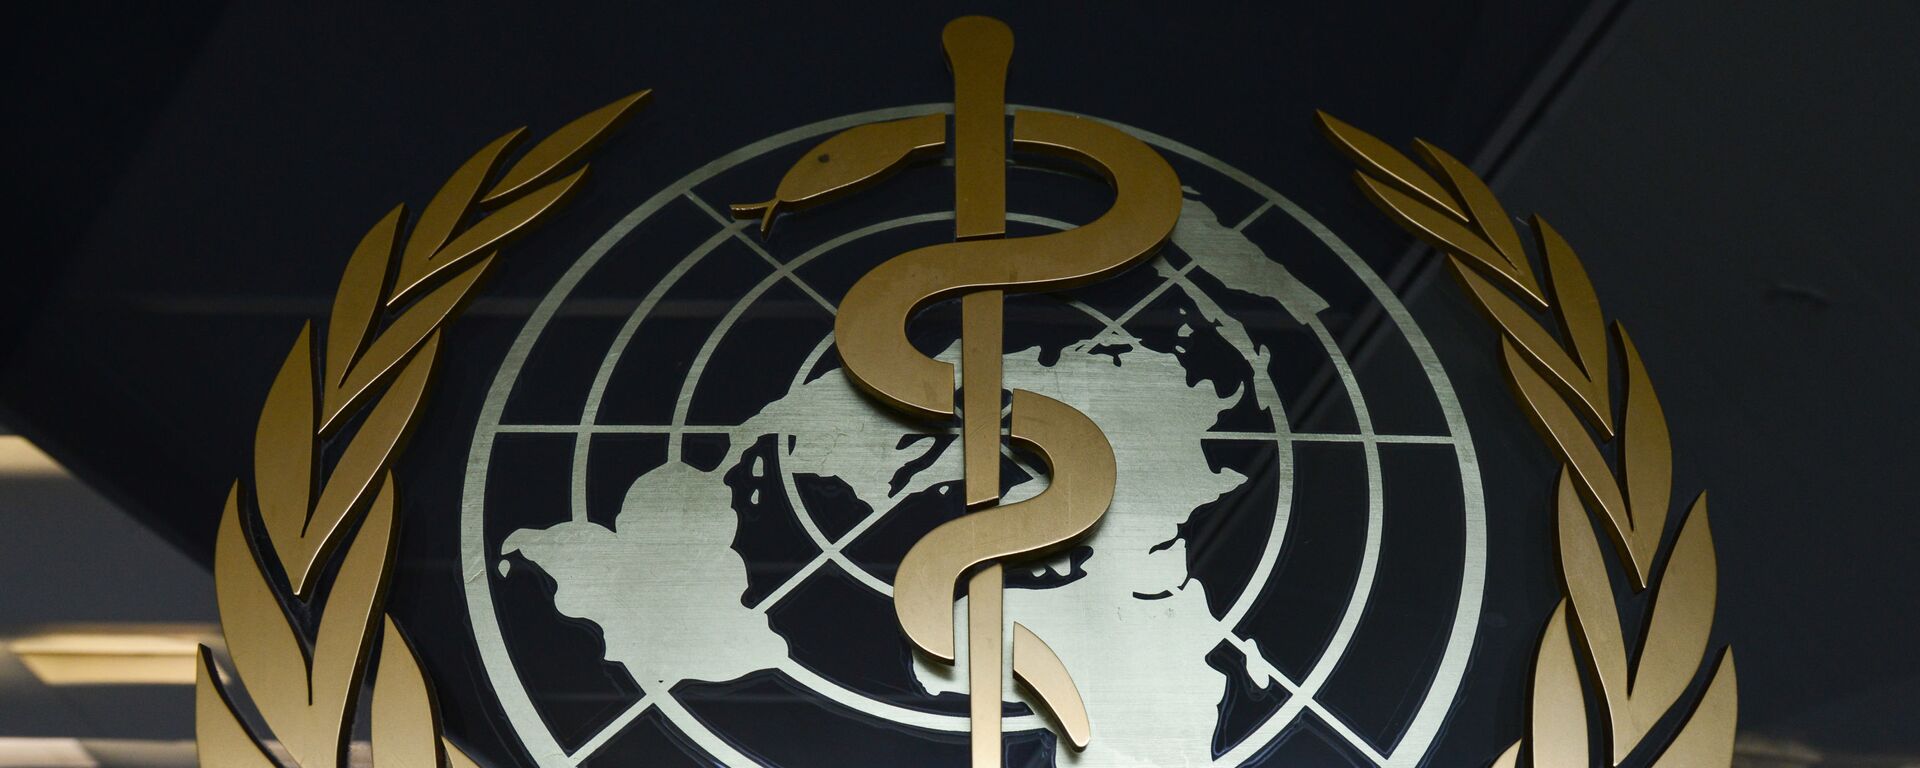 Эмблема Всемирной организации здравоохранения - Sputnik Таджикистан, 1920, 06.11.2020